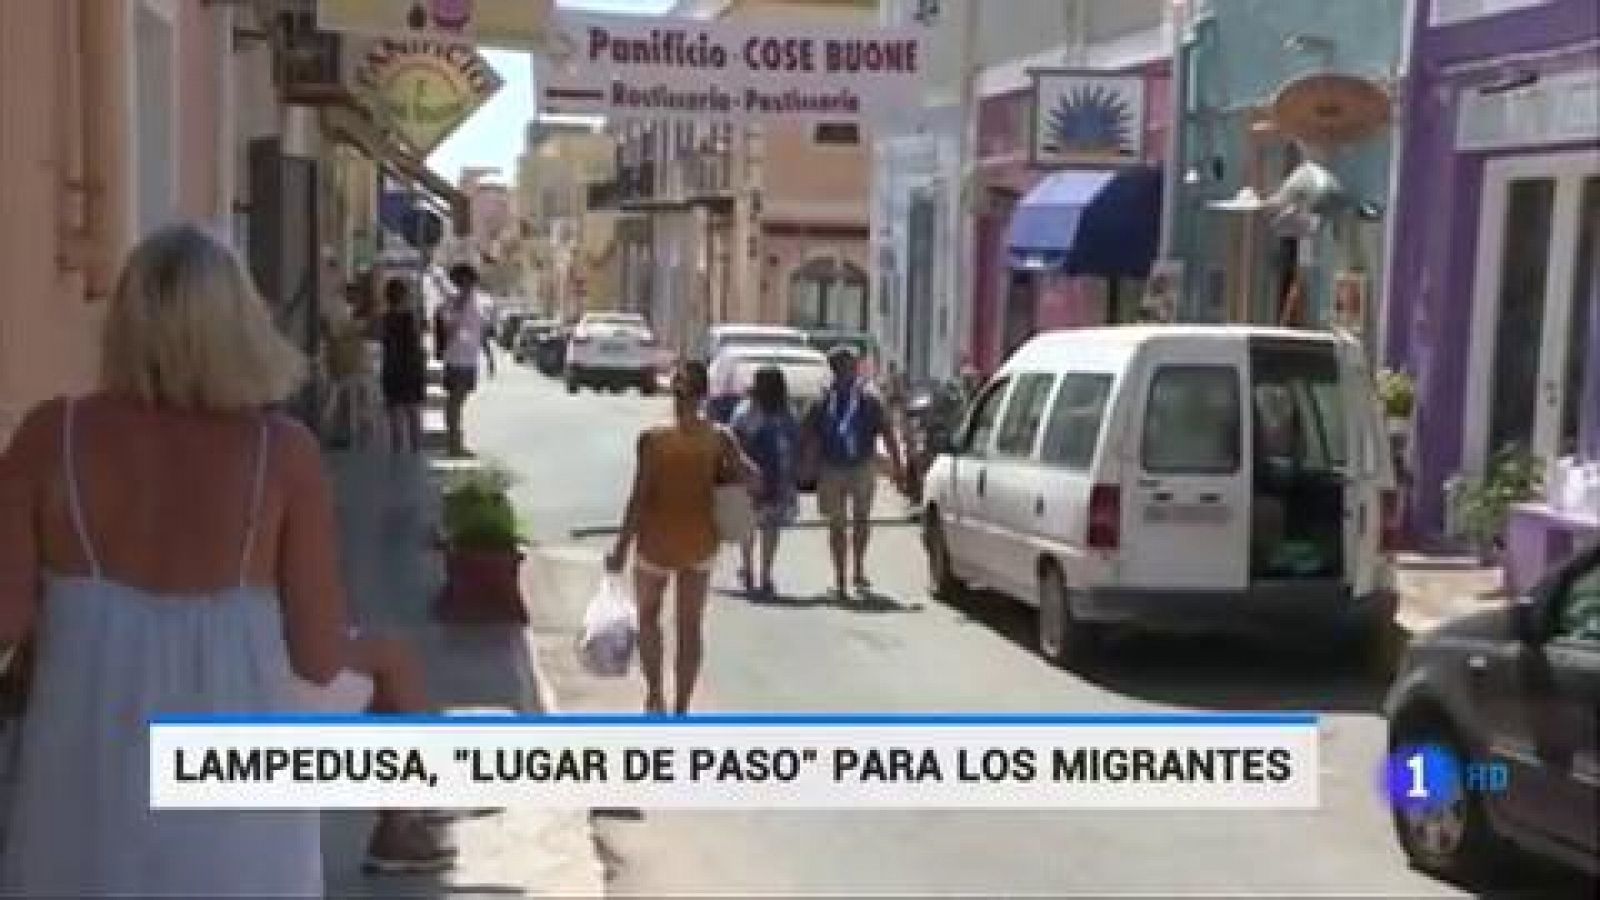 Lampedusa, lugar de paso de los migrantes que se mezclan con los turistas 